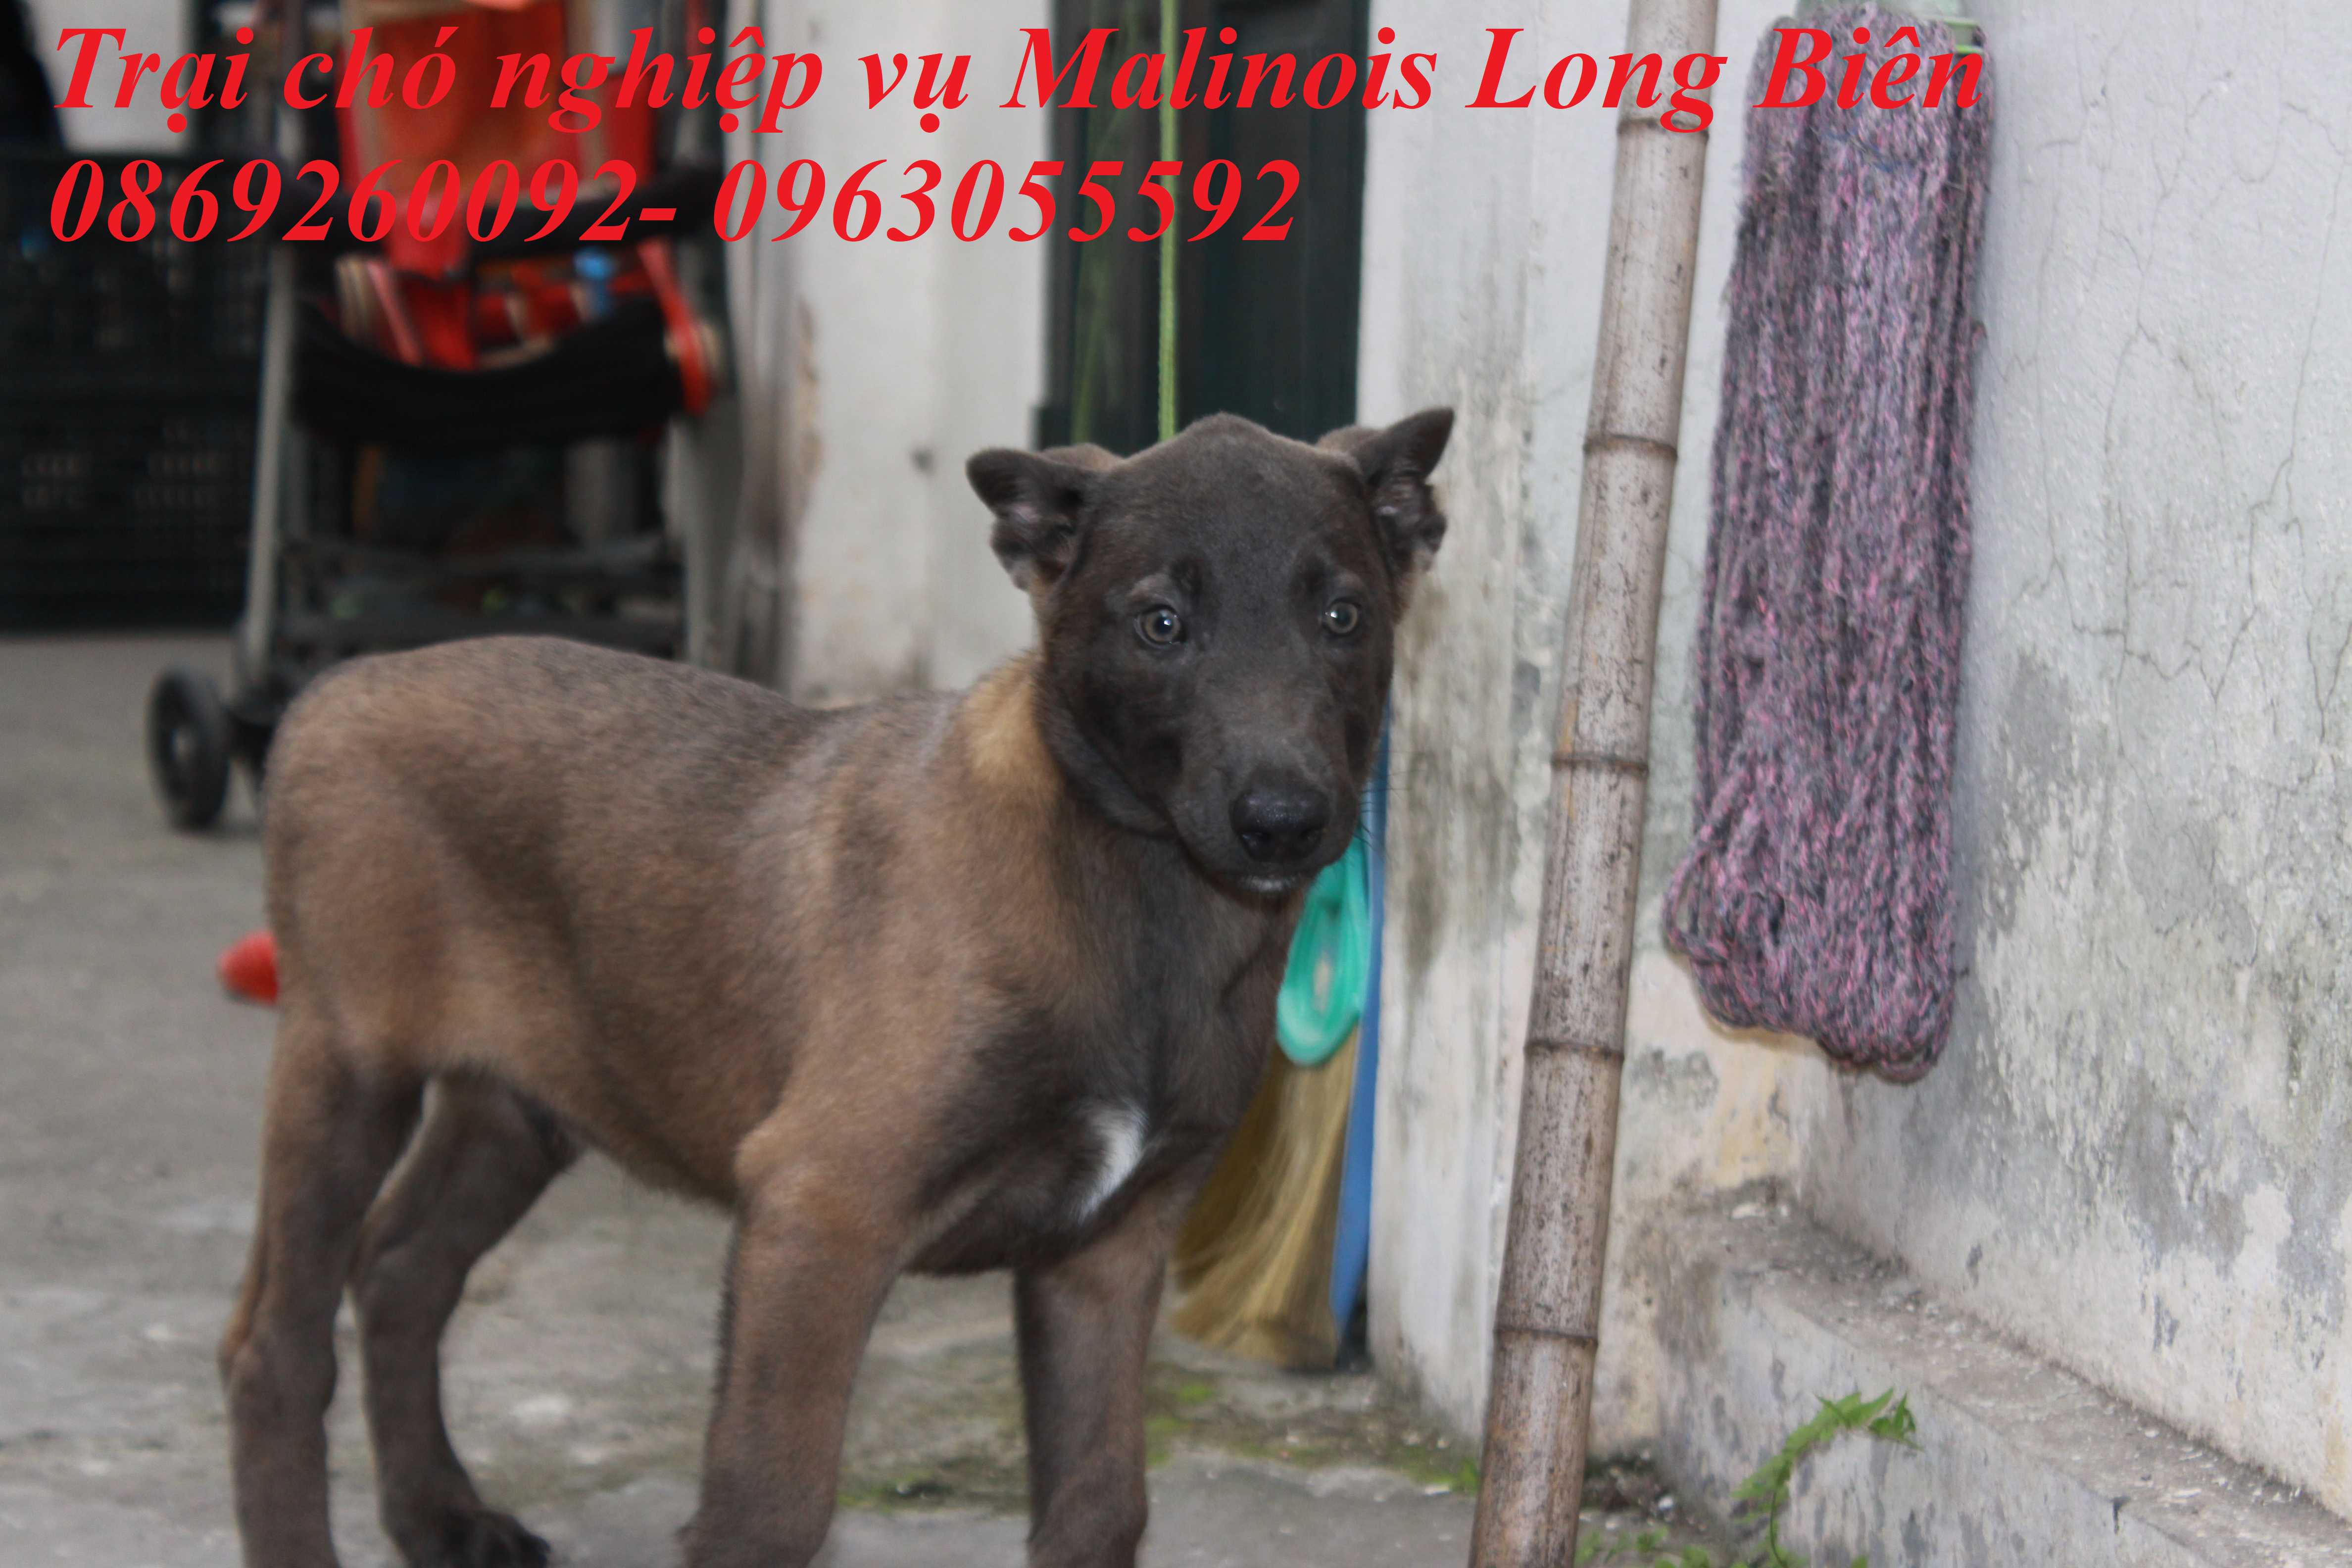 Chó con màu Blu màu hiếm tại trại chó Malinois Long Biên